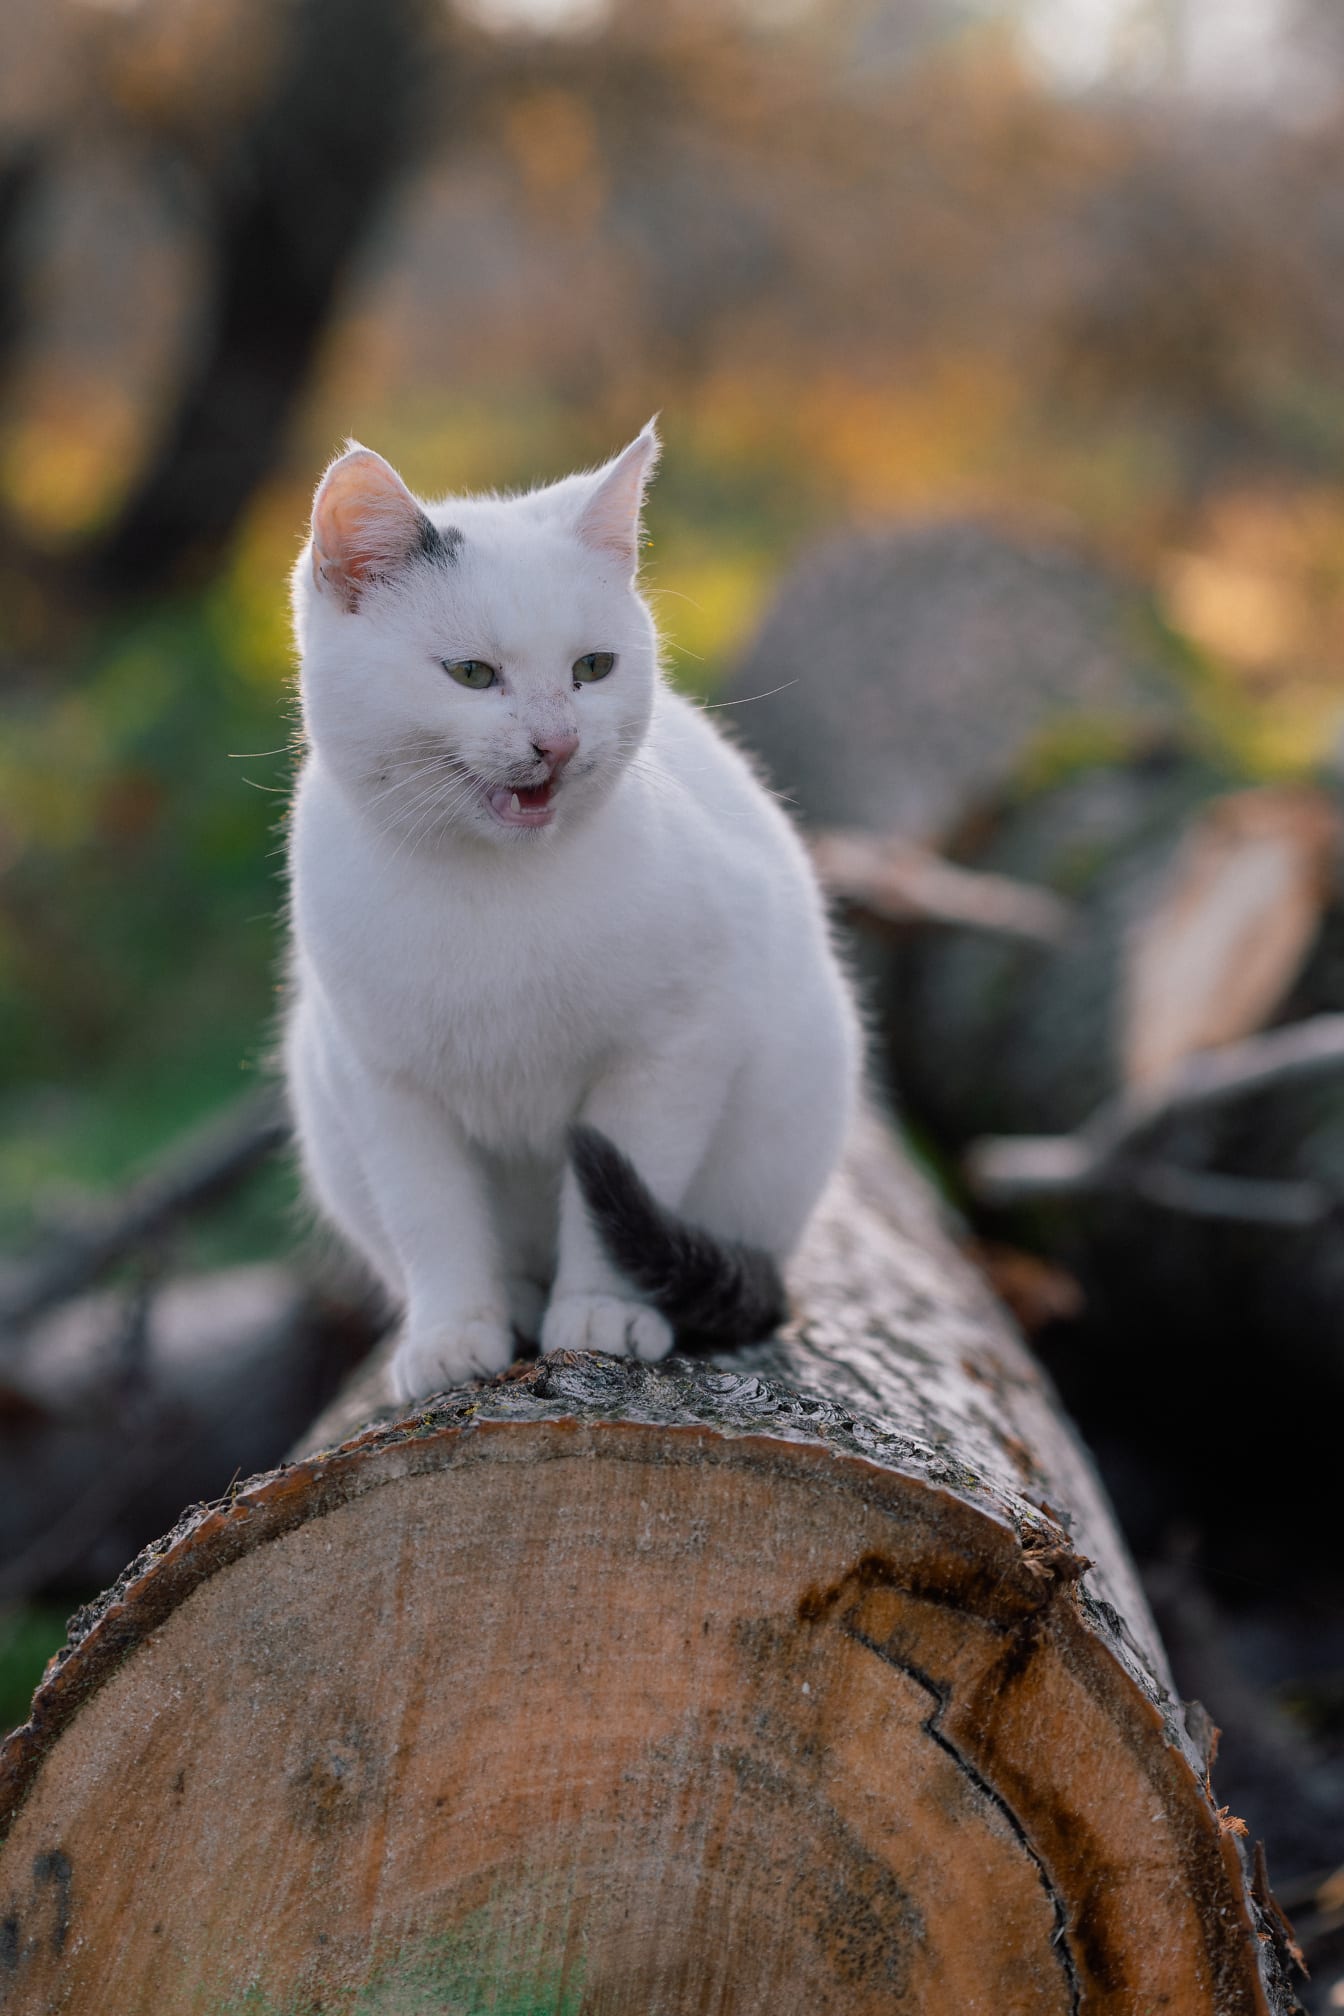 Adorable blanc sur tronc d’arbre chat à la recherche curieuse